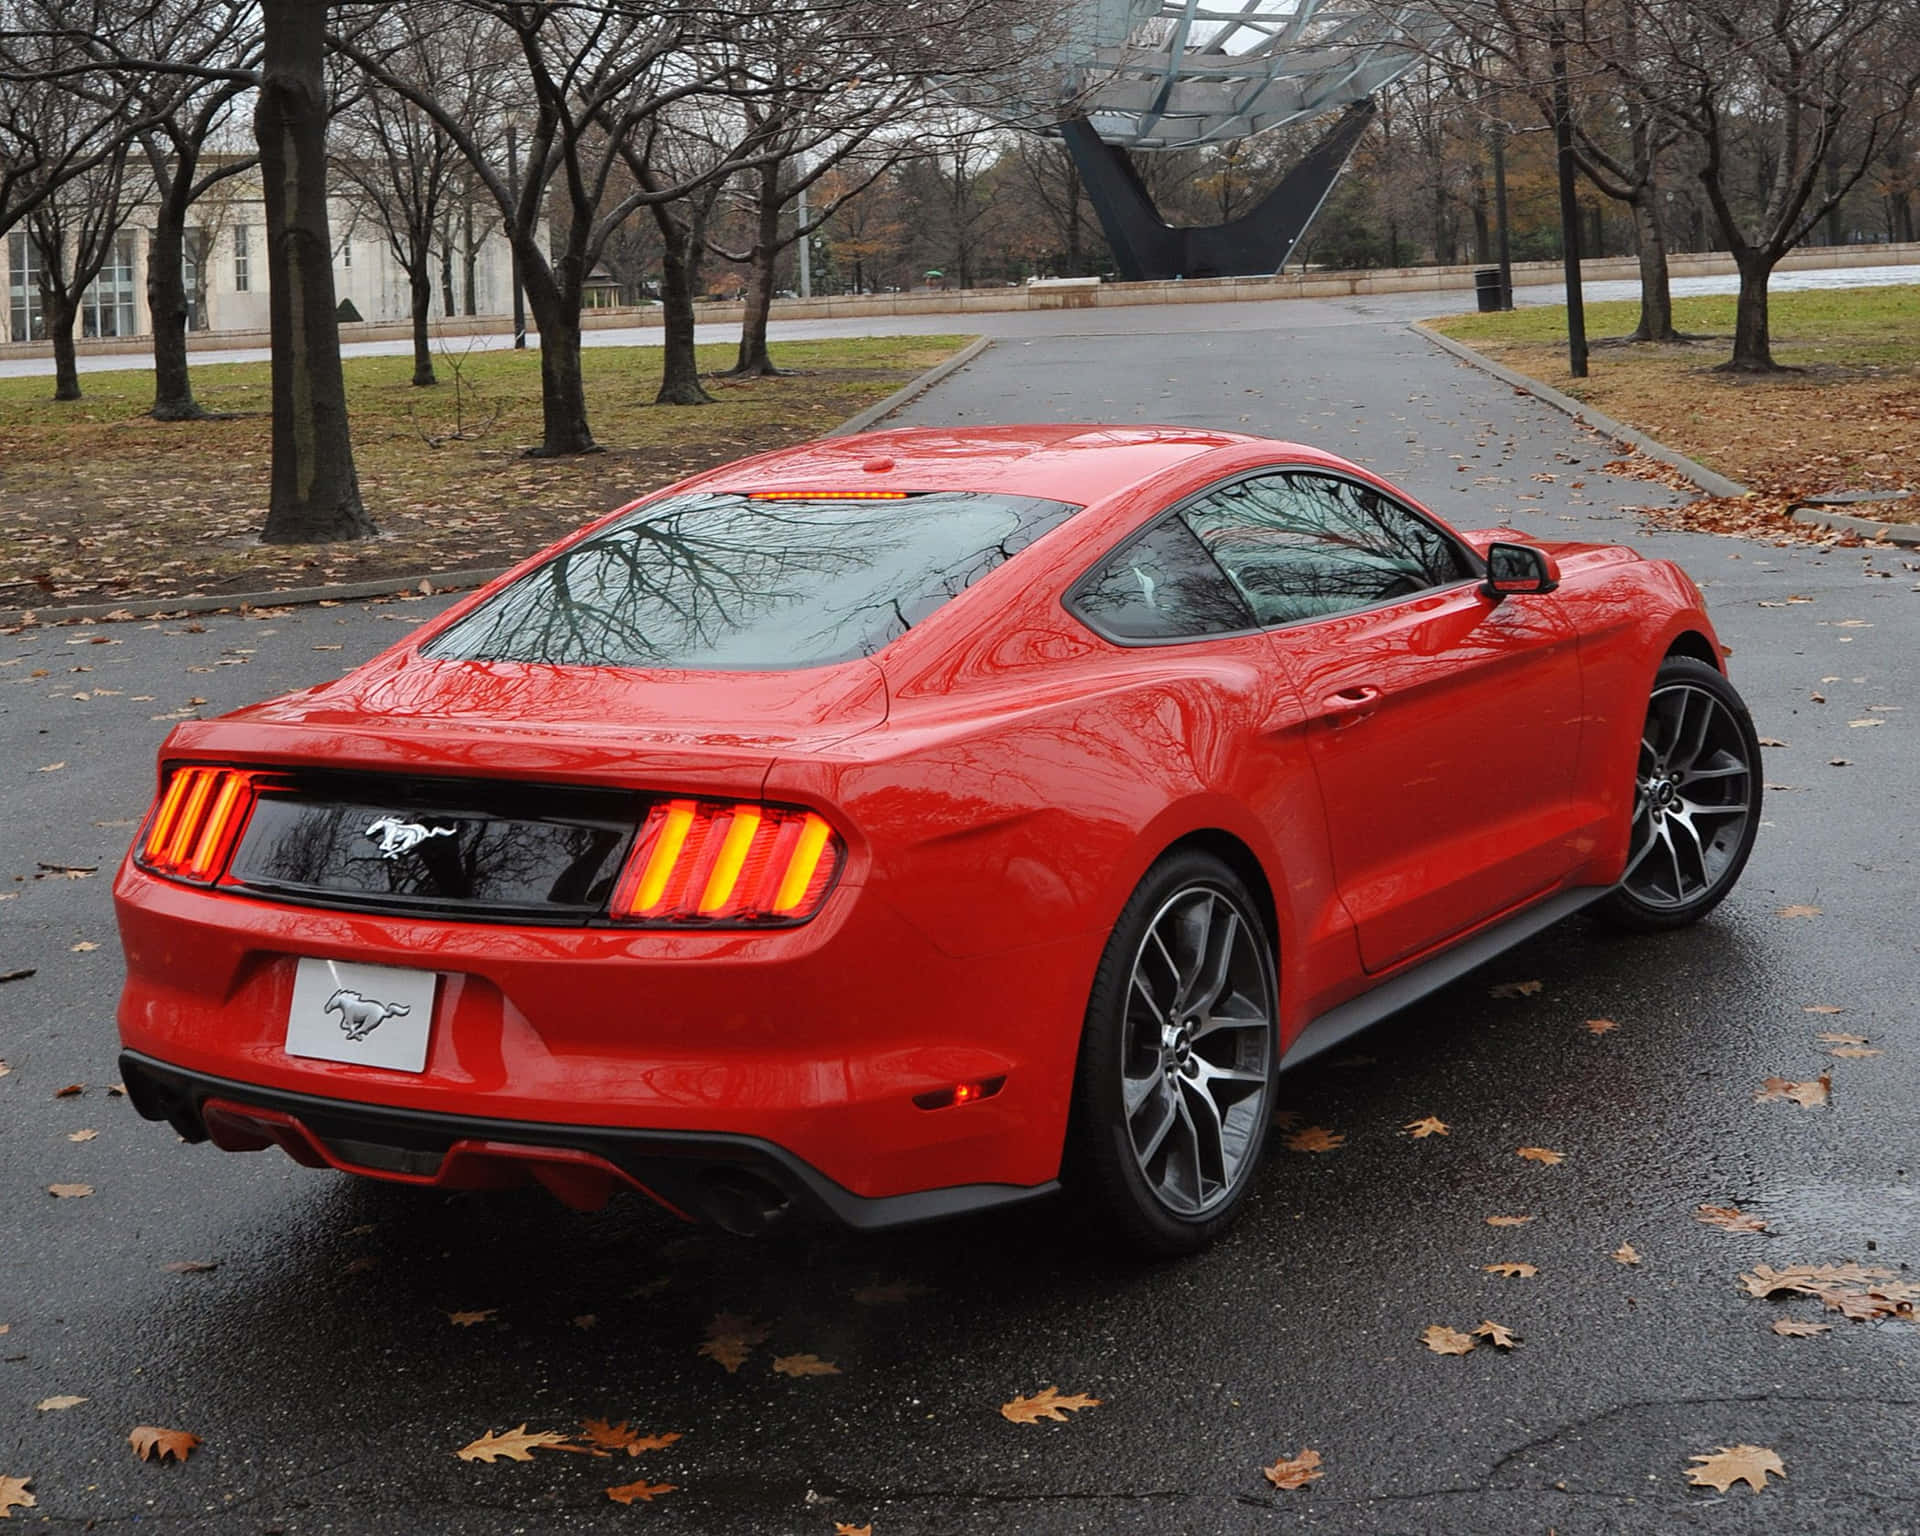 Машины 2015 года куплю. Ford Mustang 2015 красный. Форд Мустанг 2015. Ford Mustang gt 2015 красный. Новый Форд Мустанг 2015.